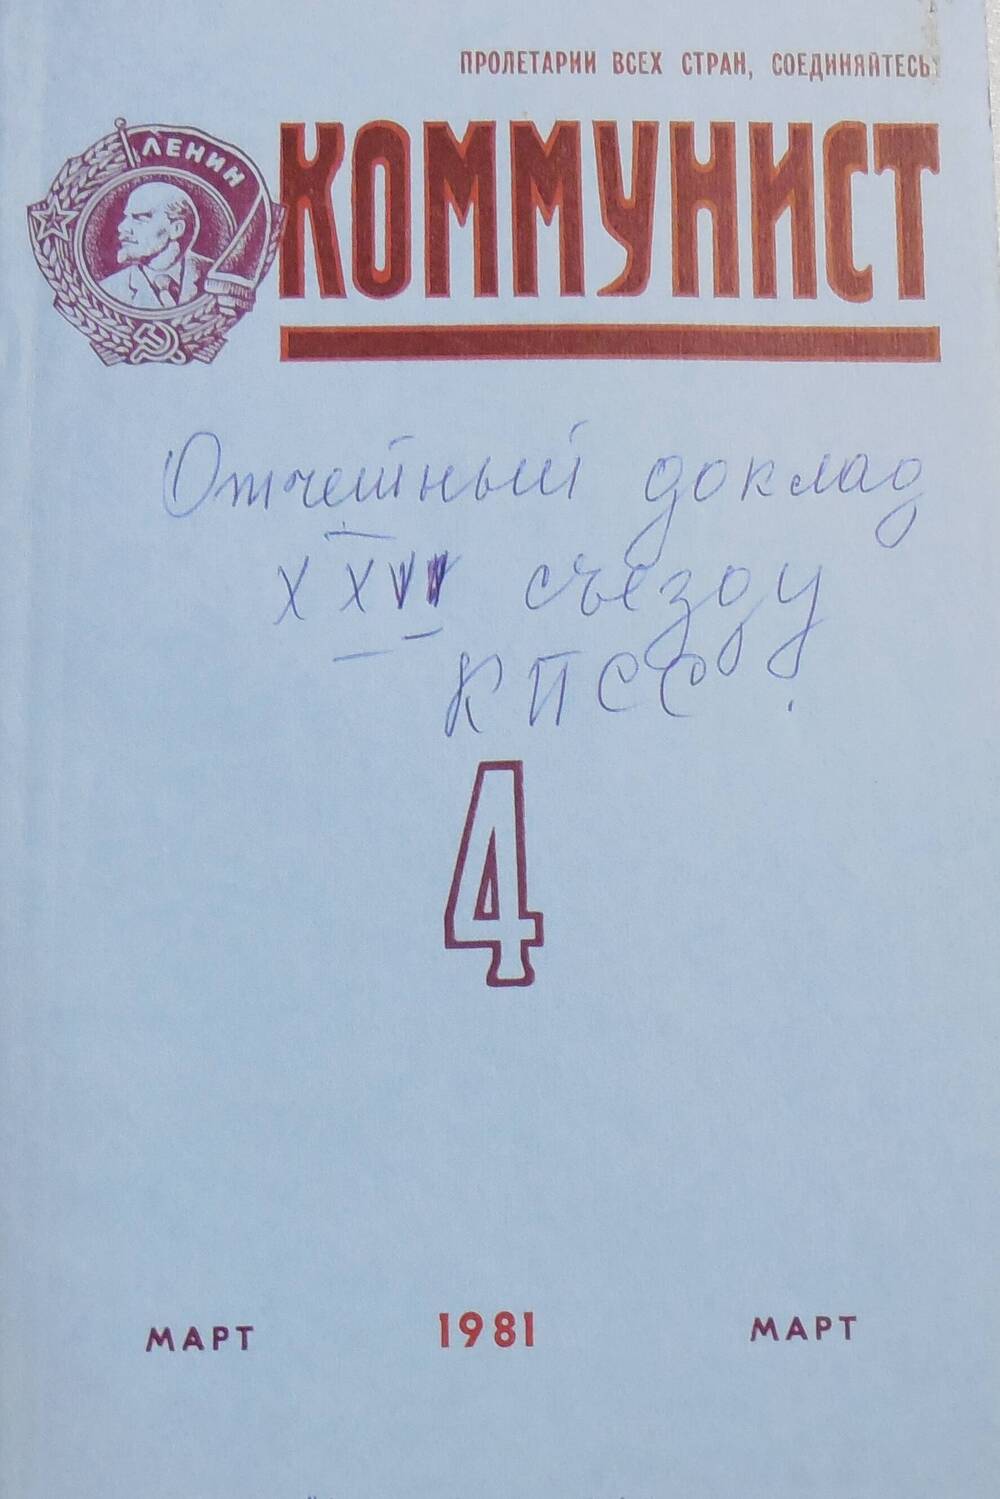 Журнал  Коммунист №4 .